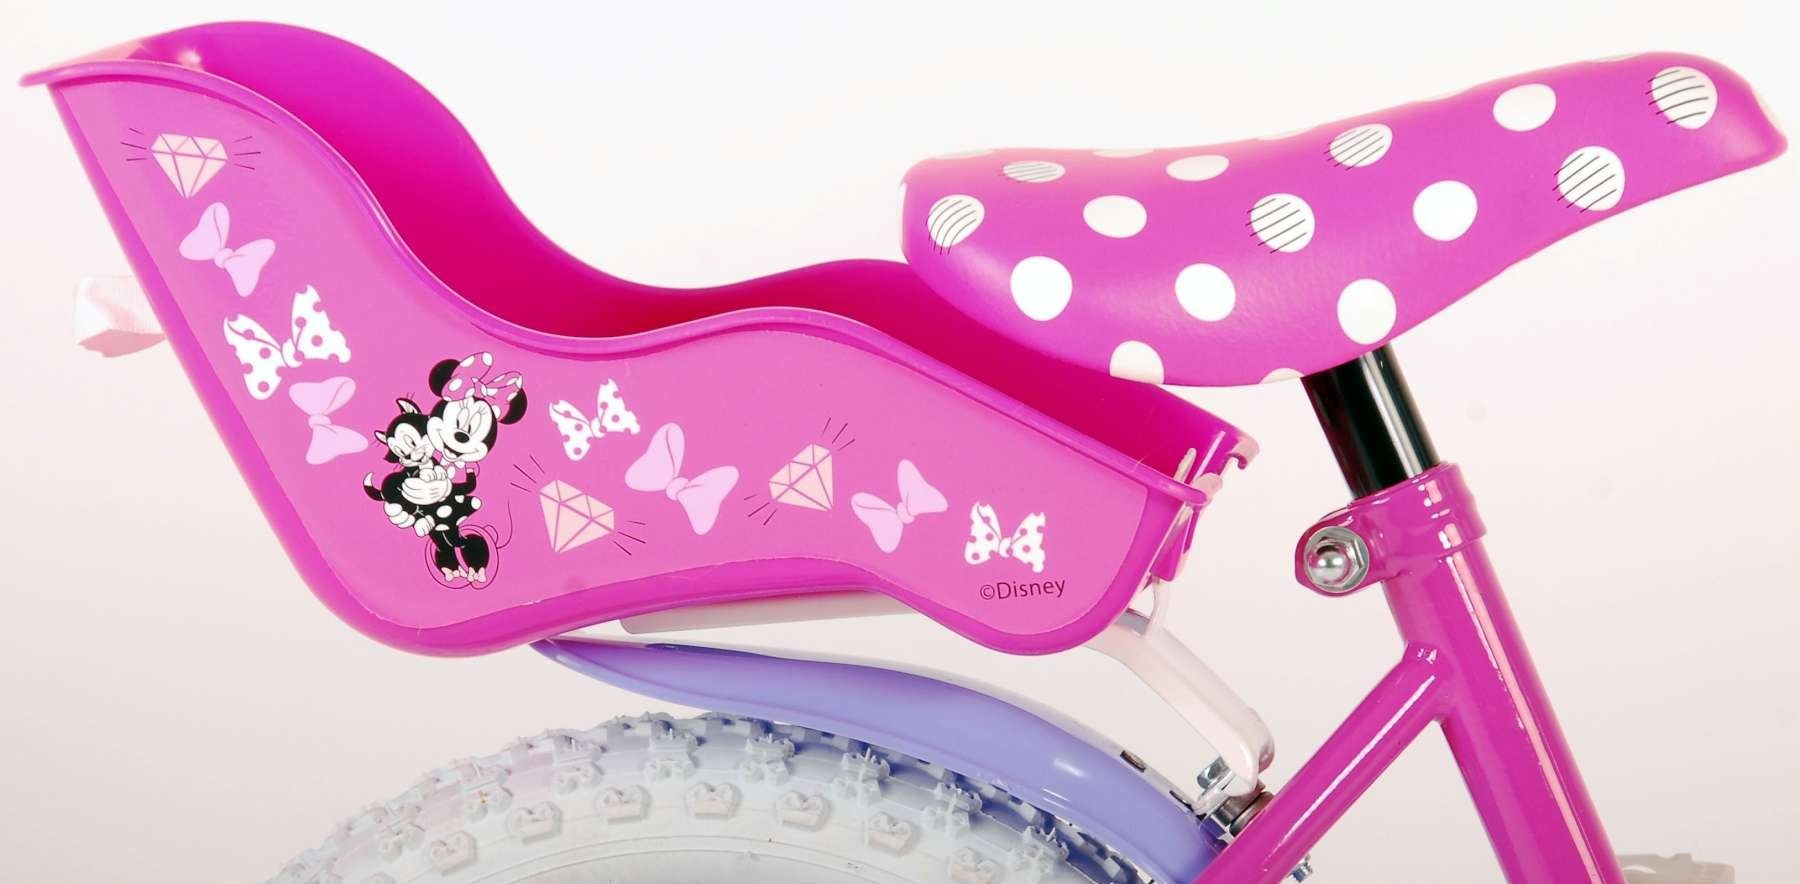 Zoll + Mädchen Kinder 1 Rücktritt - Minnie mit Kinderrad 14 Stützräder Laufrad Kinderfahrrad Disney Rutschfeste 14 Zoll Fahrrad mit Handbremse, Sicherheitsgriffe), Fahrrad TPFSports (Mädchen Gang,